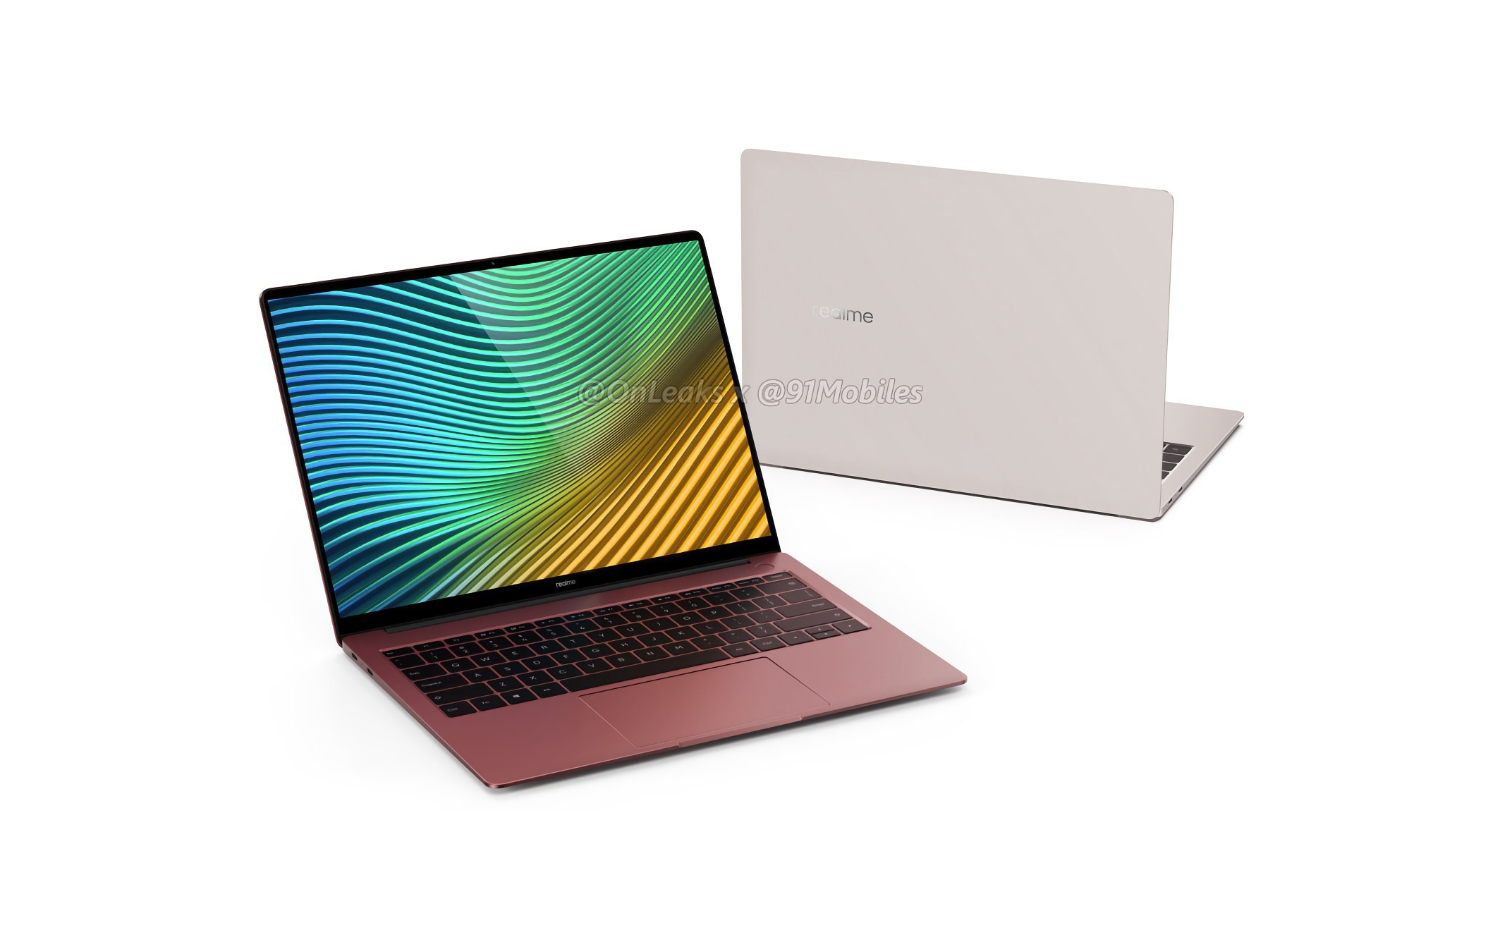 Realme ujawnia specyfikację swojego pierwszego laptopa: 14-calowy ekran, procesor Intel Core i5-1135G7, do 16GB RAM i Windows 10 po wyjęciu z pudełka